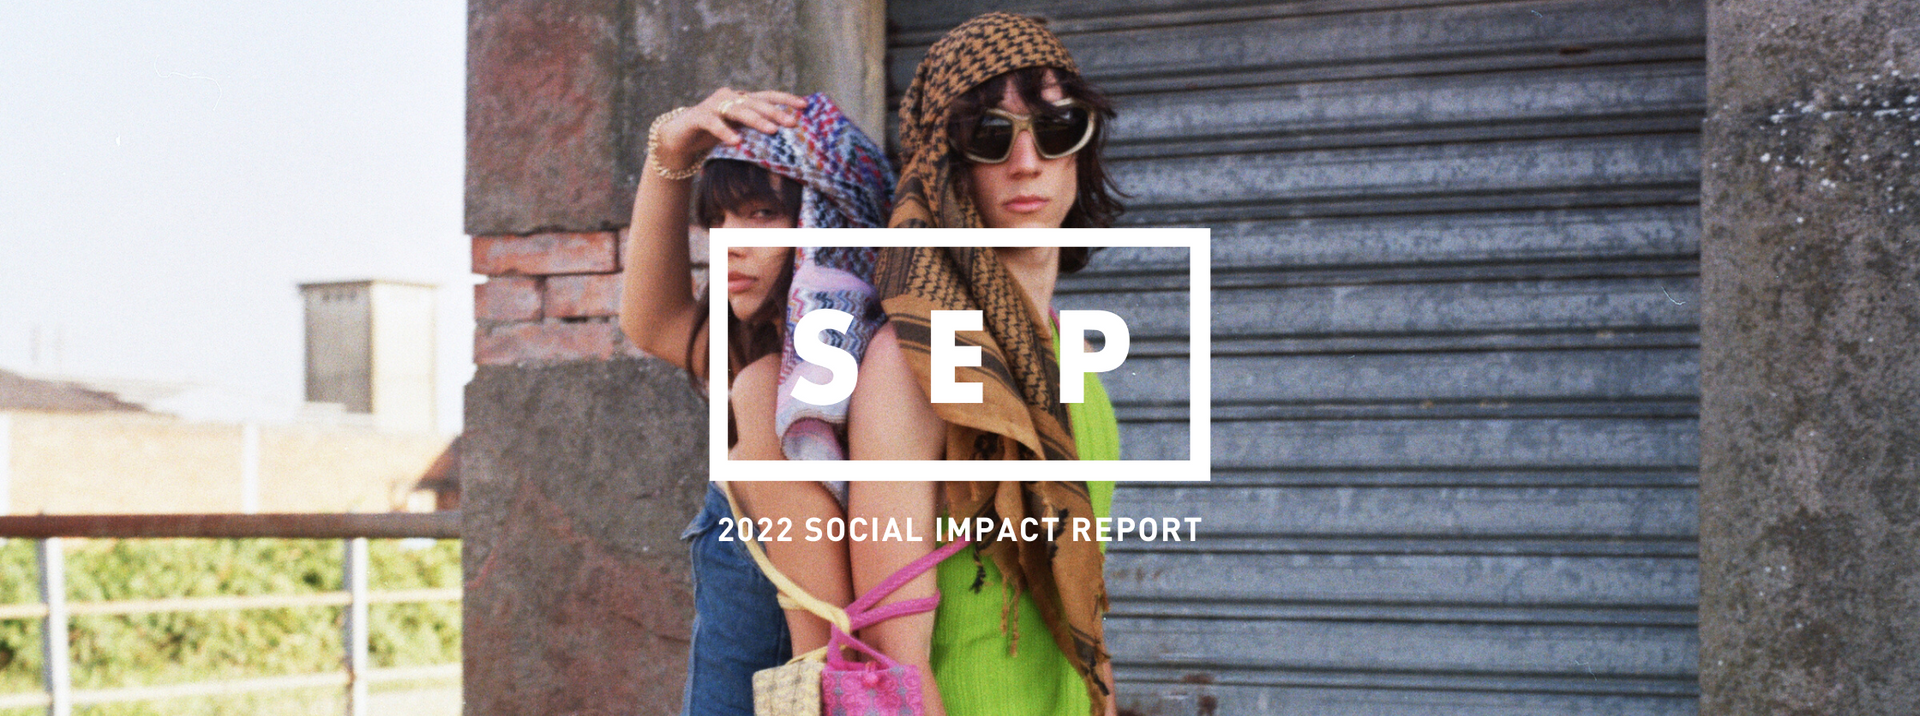 2022 SOCIAL IMPACT REPORT